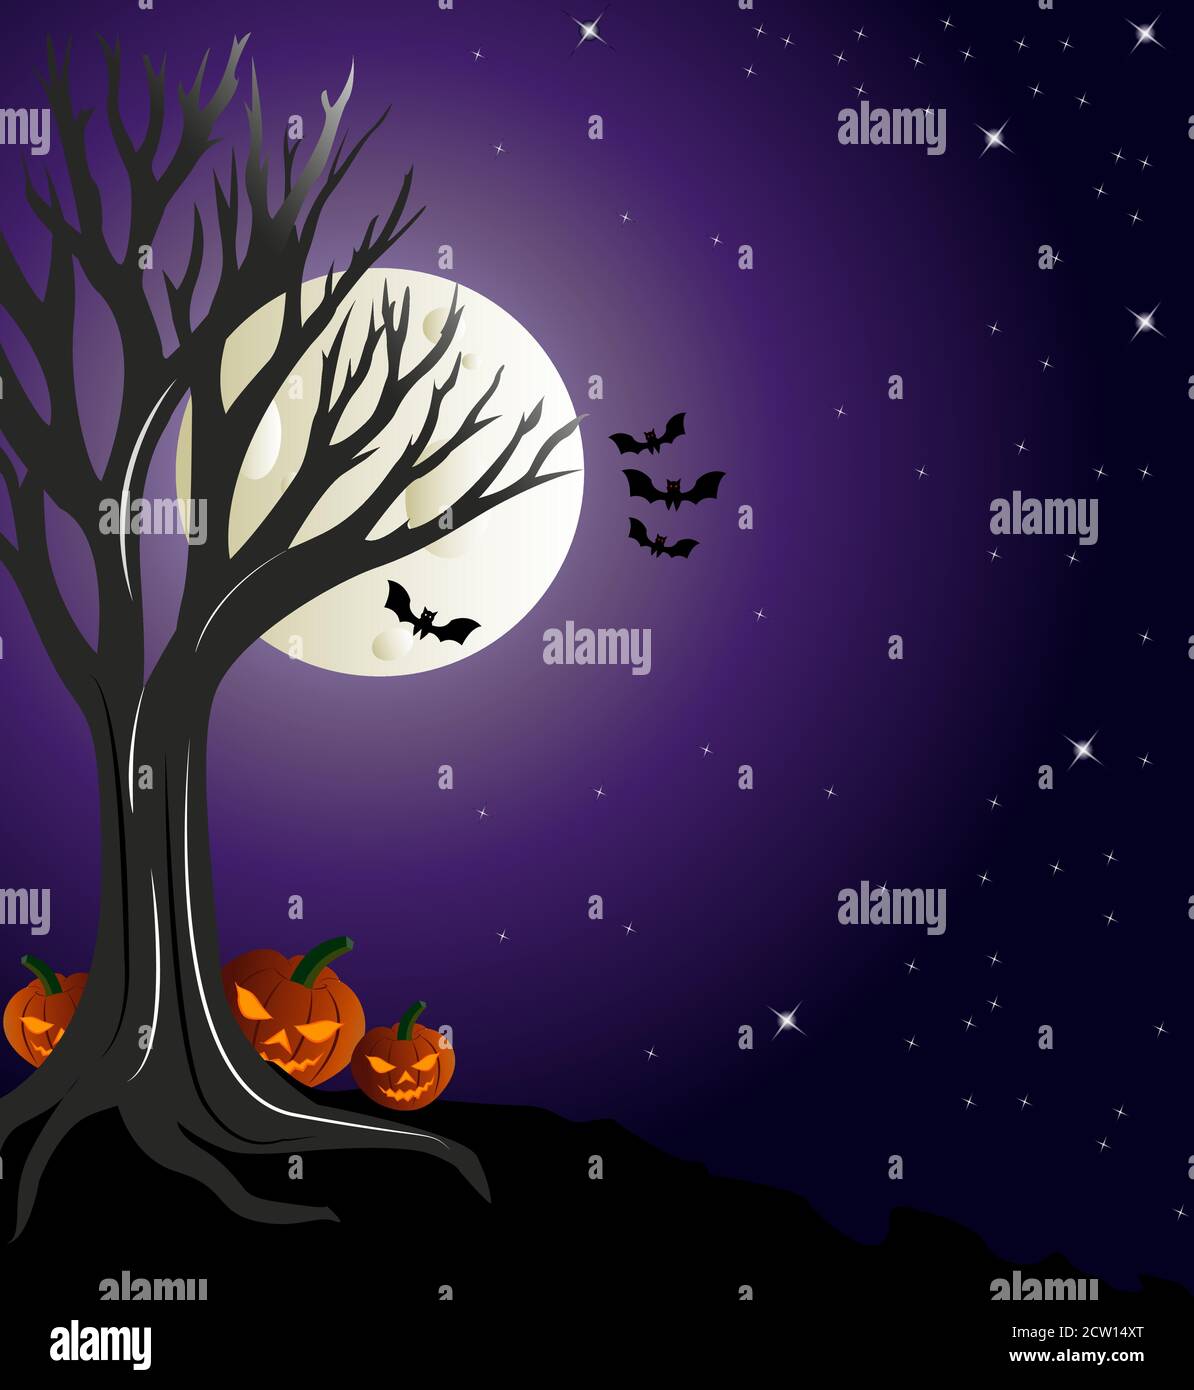 Scène effrayante de la nuit d'halloween dans laquelle les laterns de citrouille se cachent derrière un arbre sous ciel clair avec pleine lune et étoiles. Illustration de Vecteur